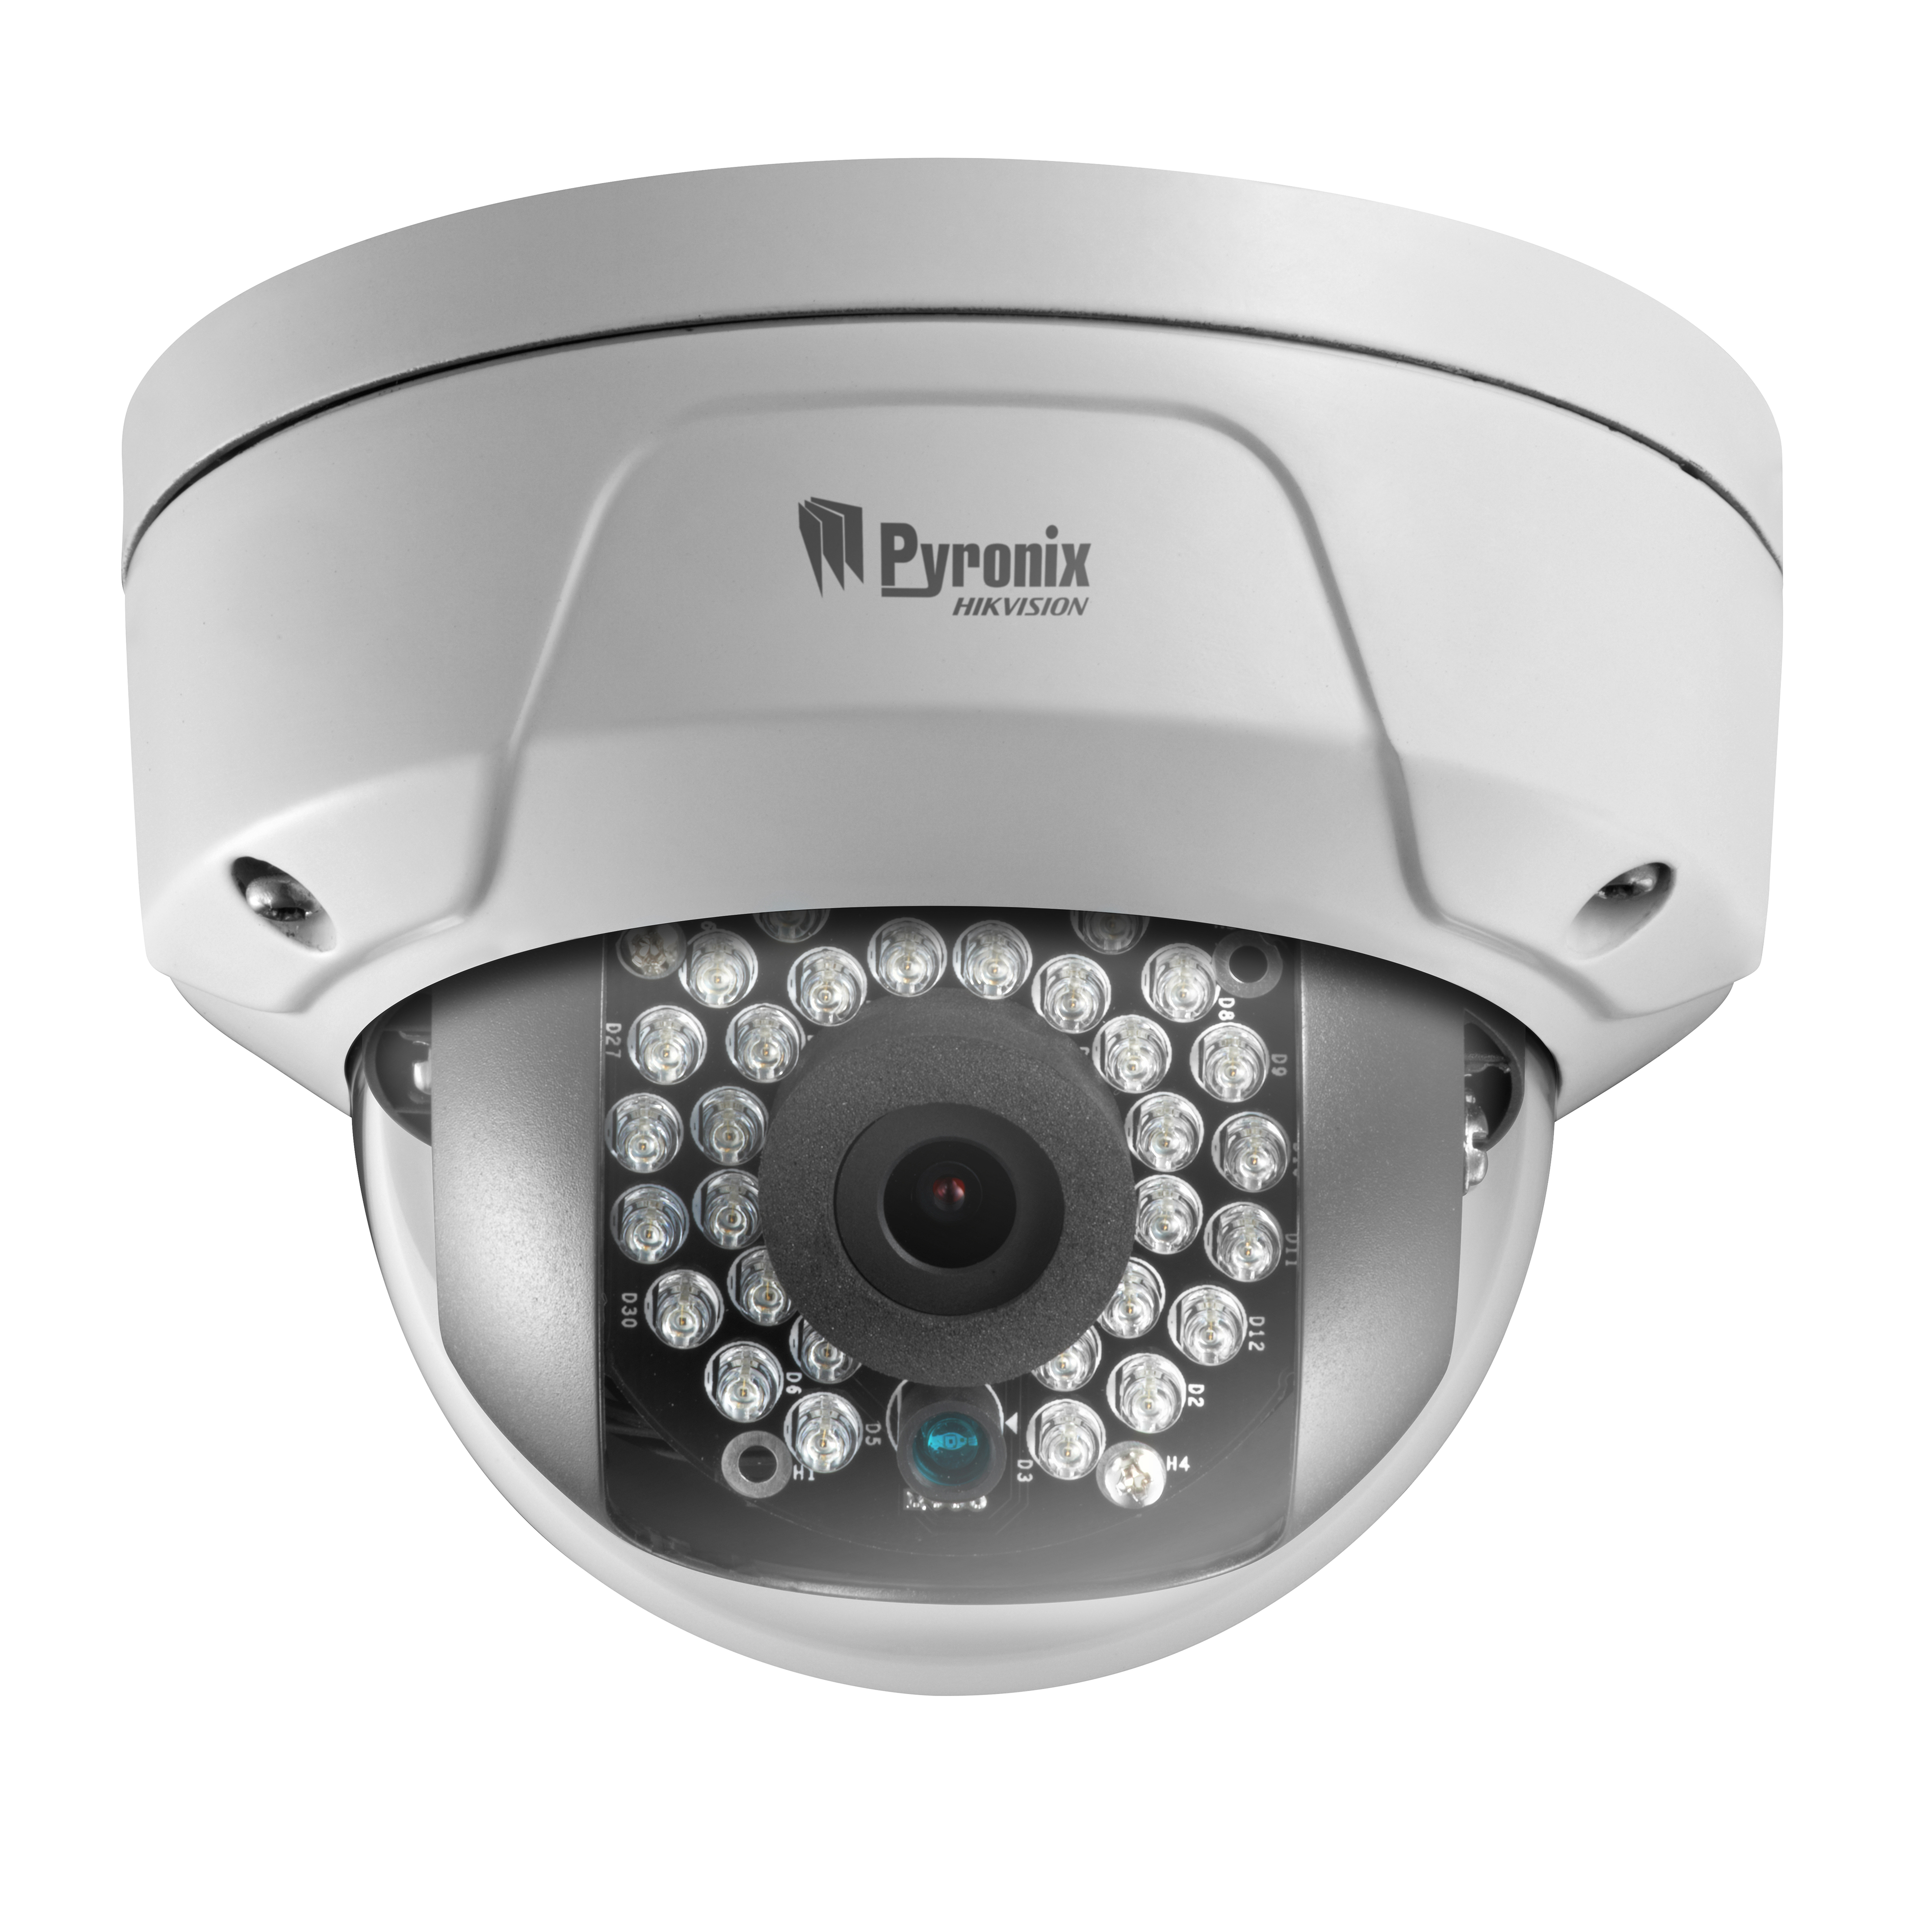 pyronix wireless camera